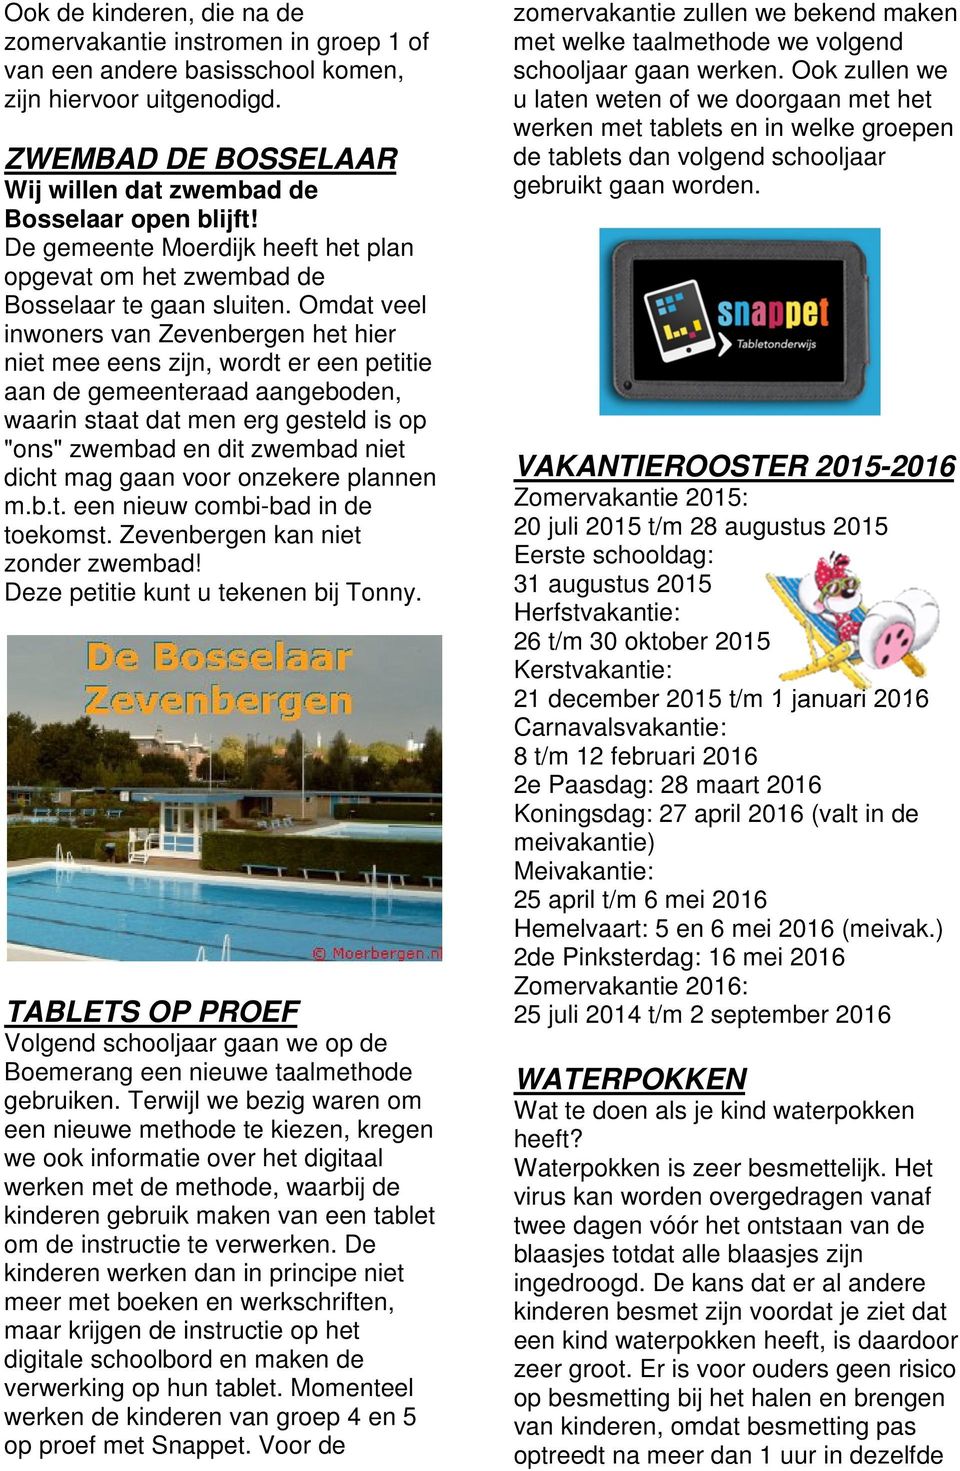 Omdat veel inwoners van Zevenbergen het hier niet mee eens zijn, wordt er een petitie aan de gemeenteraad aangeboden, waarin staat dat men erg gesteld is op "ons" zwembad en dit zwembad niet dicht